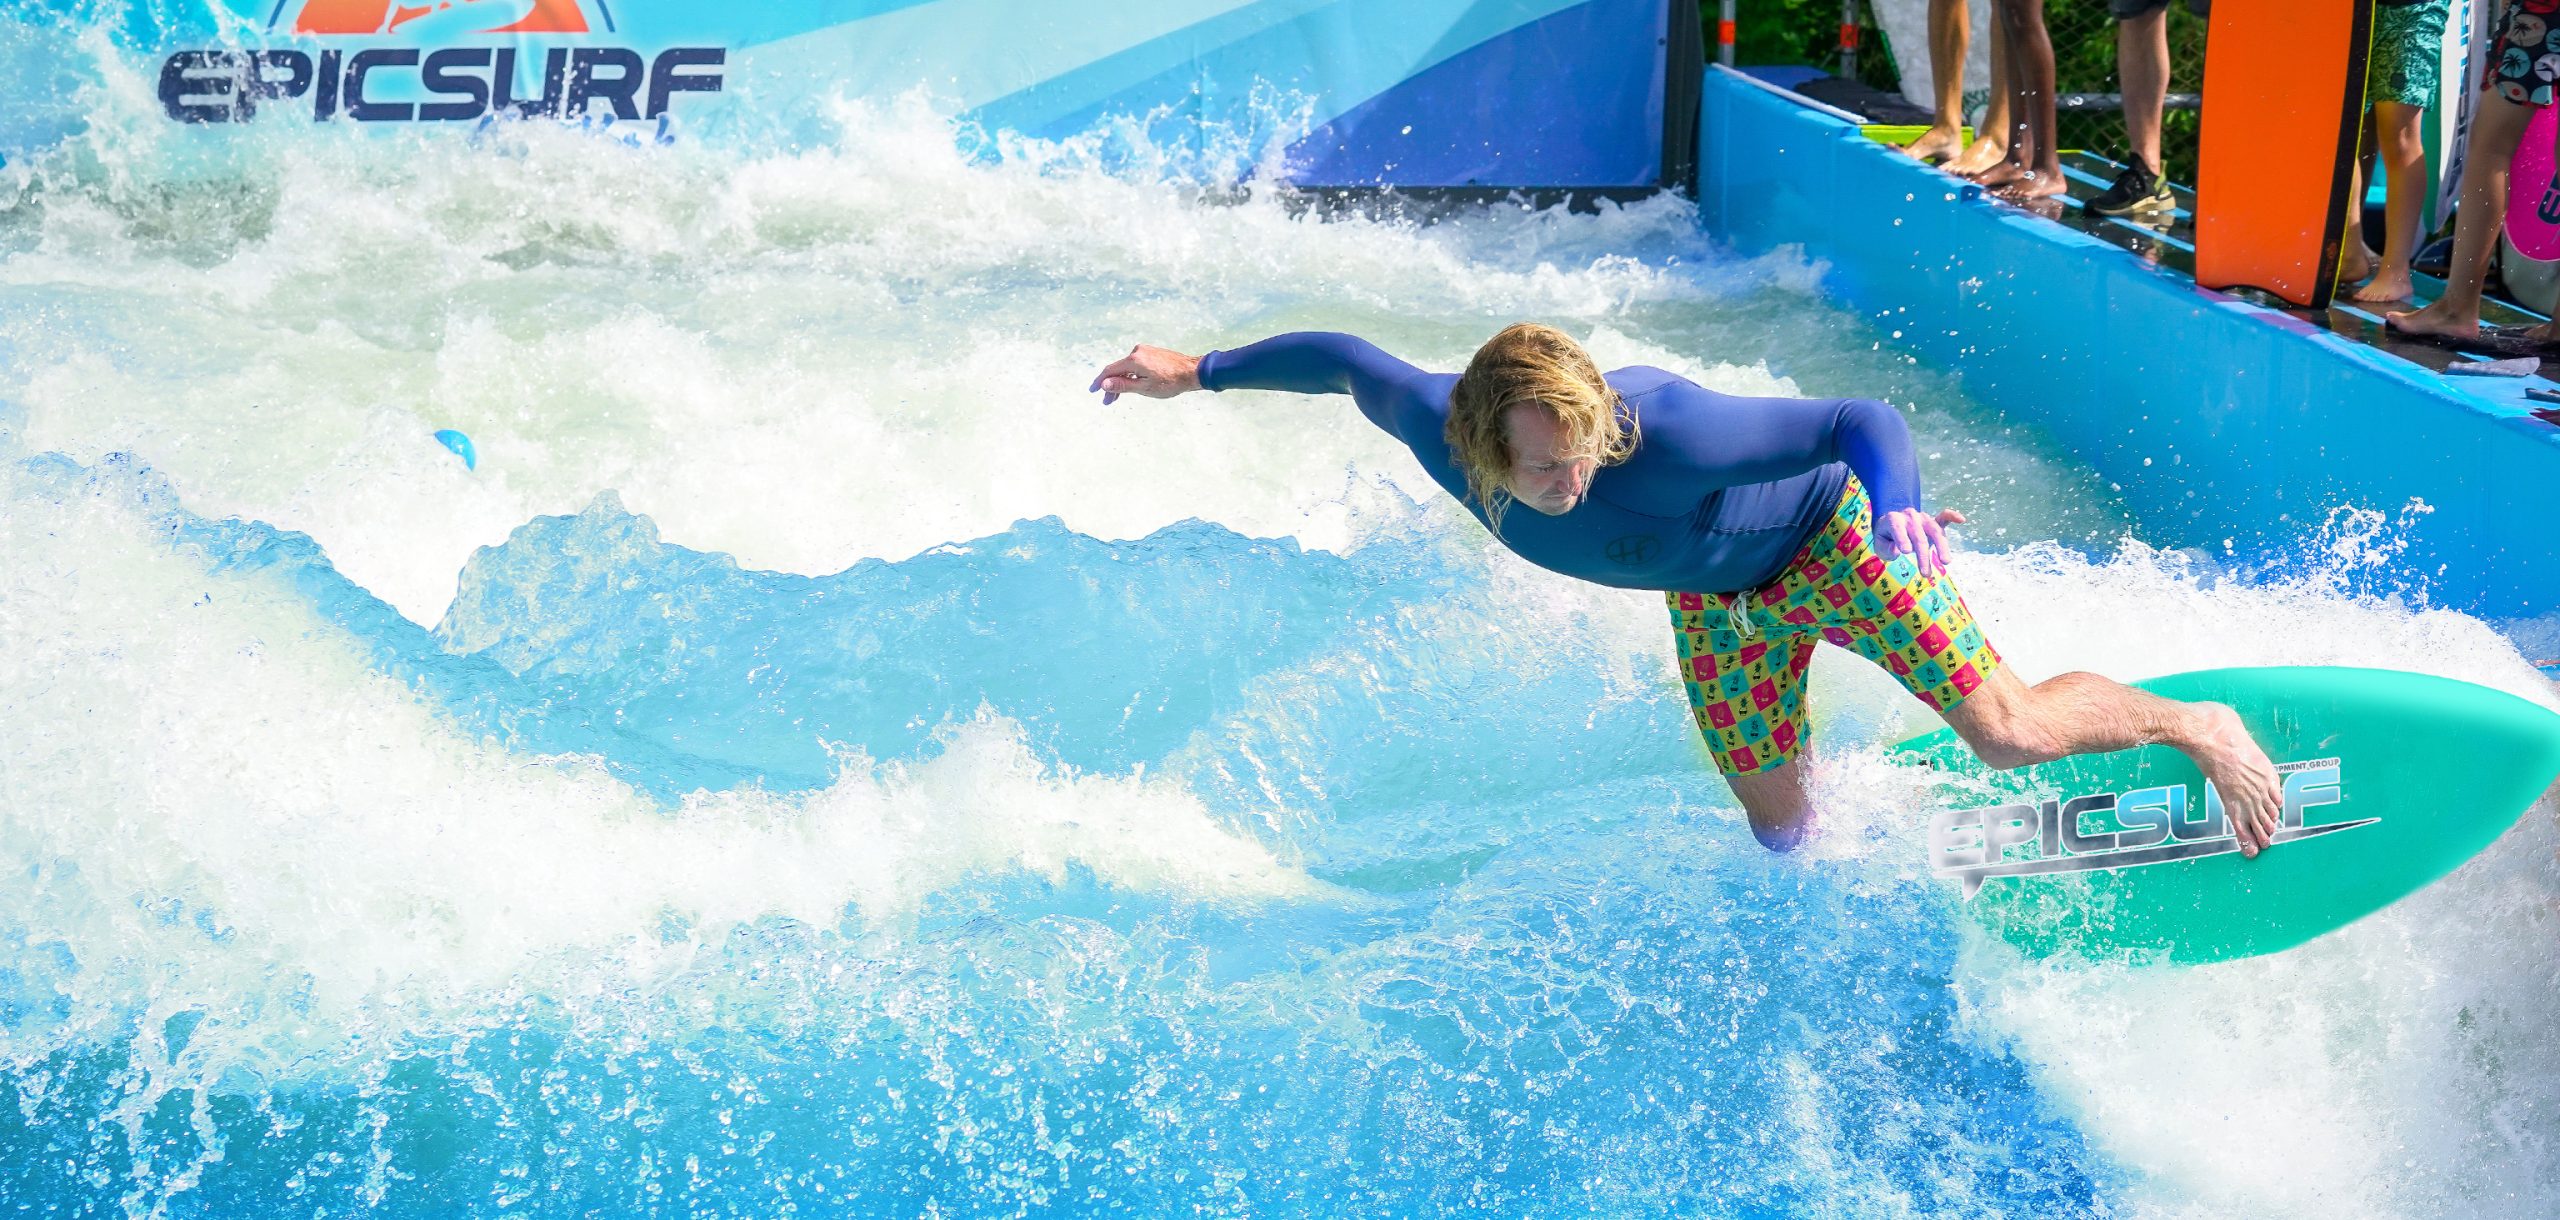 epicsurf surfing wave